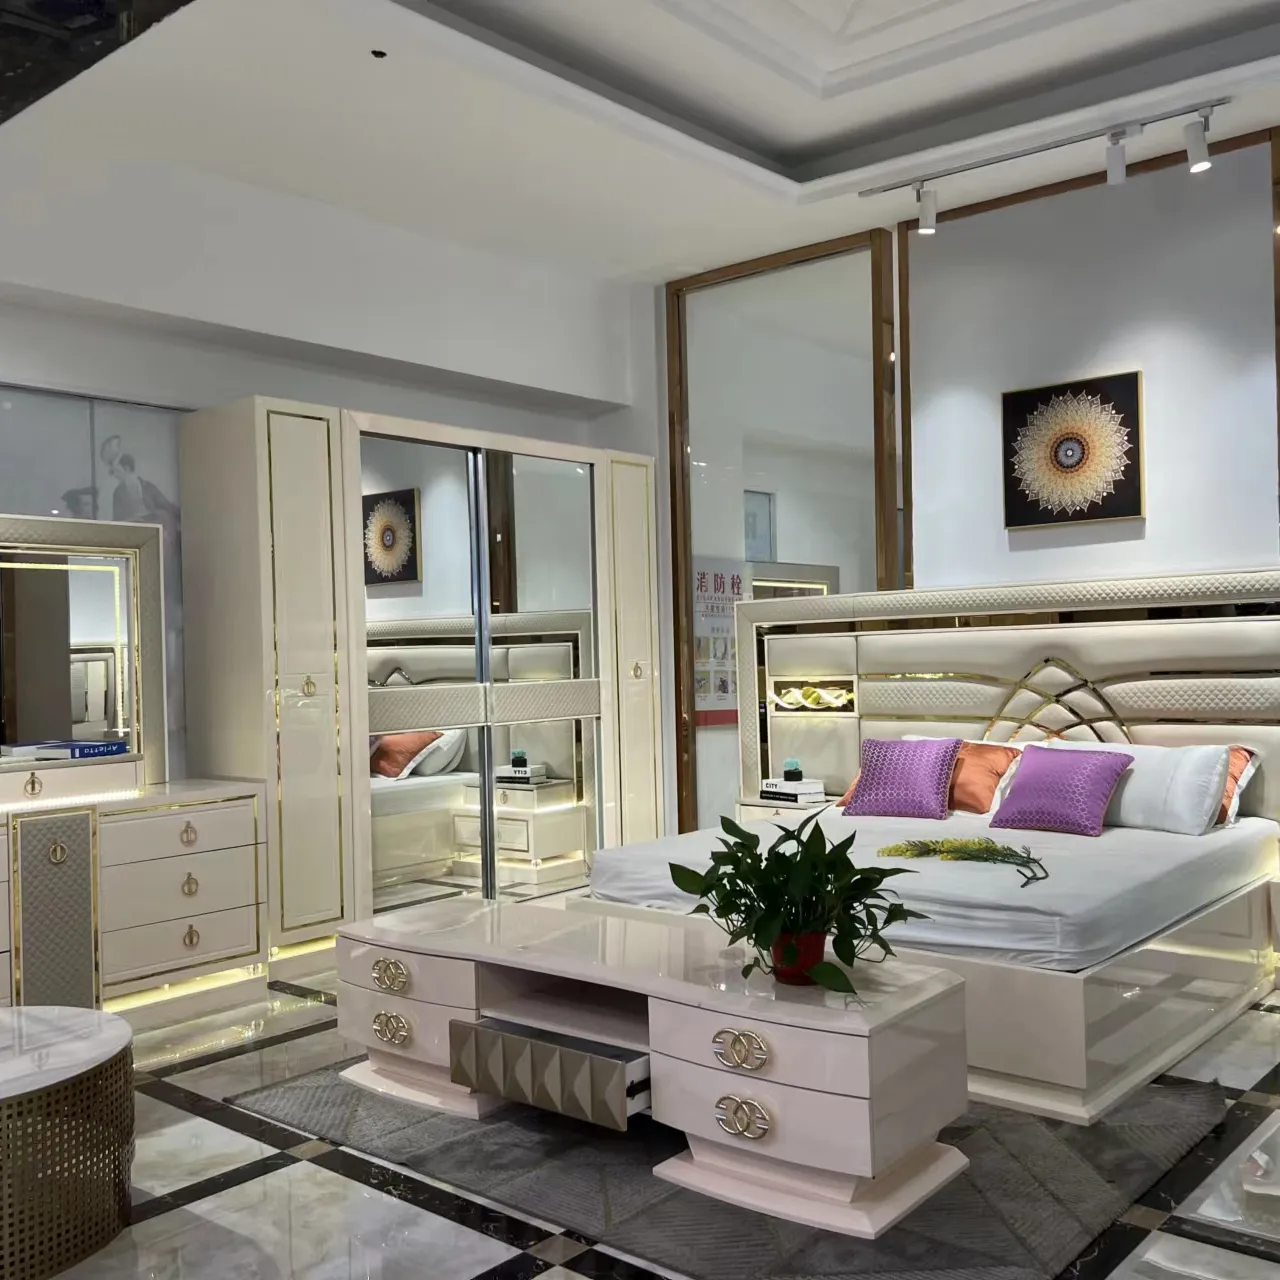 Роскошная мебель для спальни в итальянском стиле, роскошная мебель для спальни, шкаф для кровати, прикроватный столик, набор для дизайна